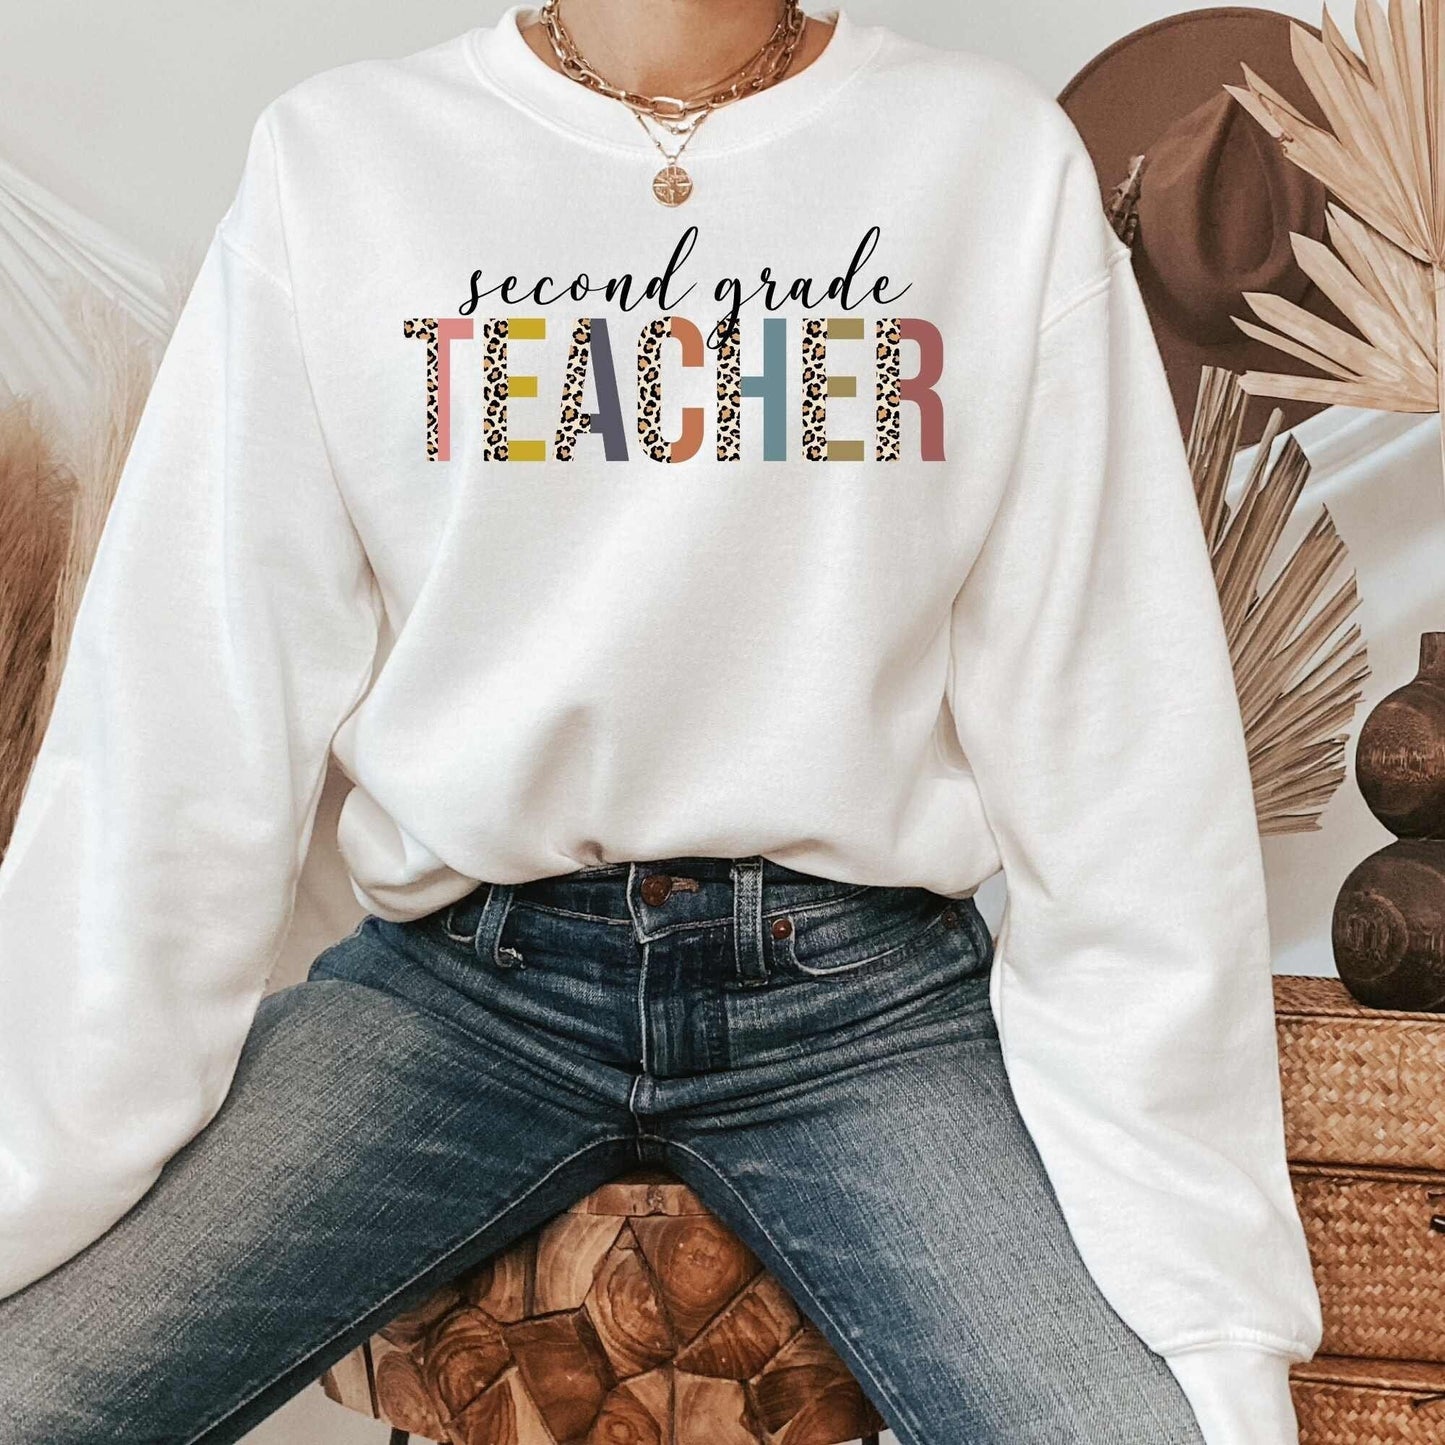 2nd Grade Teacher Shirt, Great for New Teacher, Teacher Teams & Appreciation Gifts